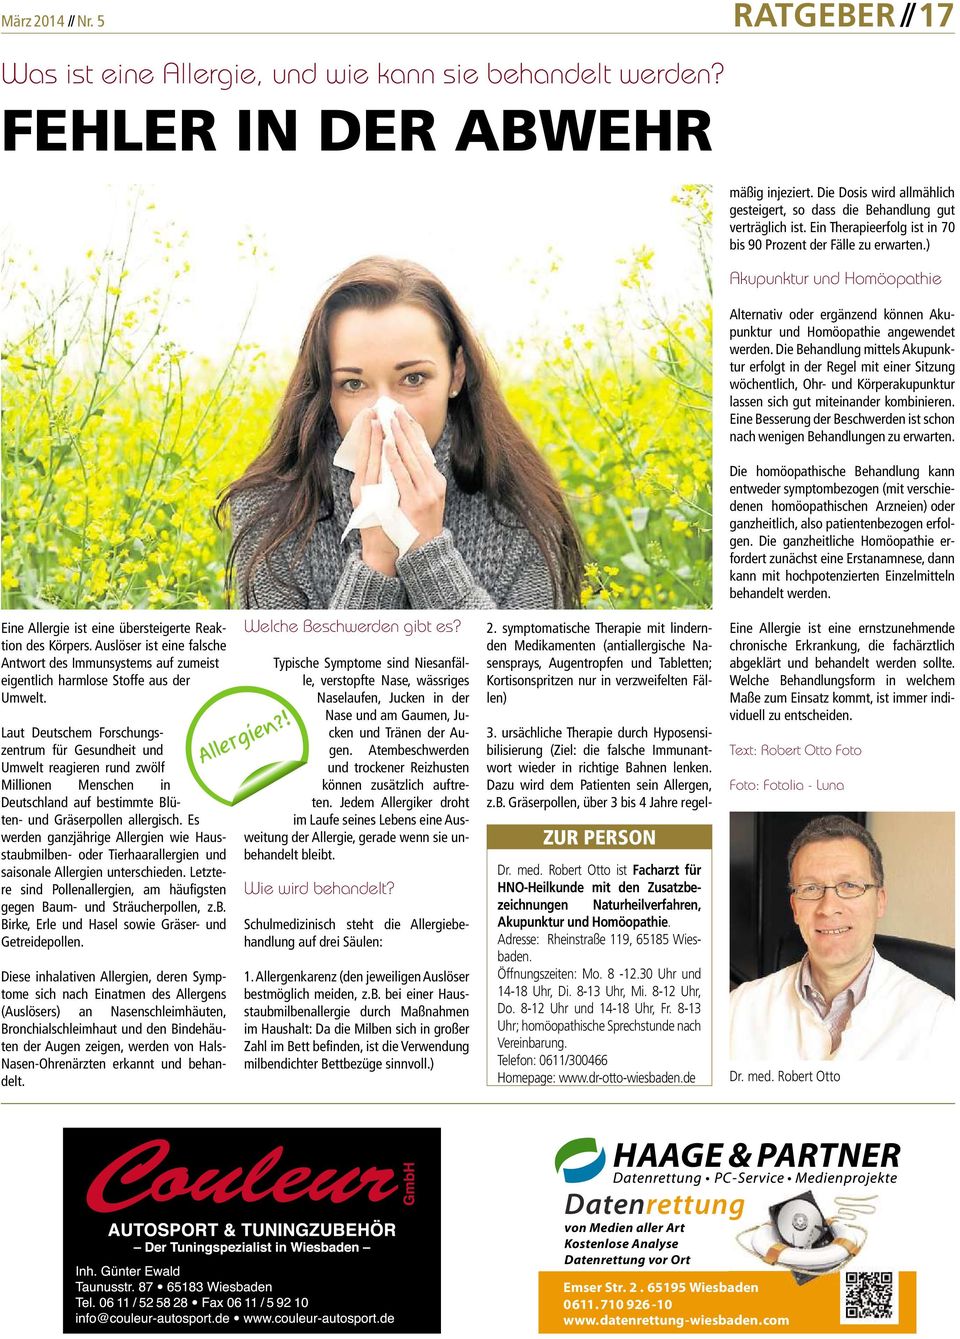 Laut Deutschem Forschungszentrum für Gesundheit und Umwelt reagieren rund zwölf Millionen Menschen in Deutschland auf bestimmte Blüten- und Gräserpollen allergisch.